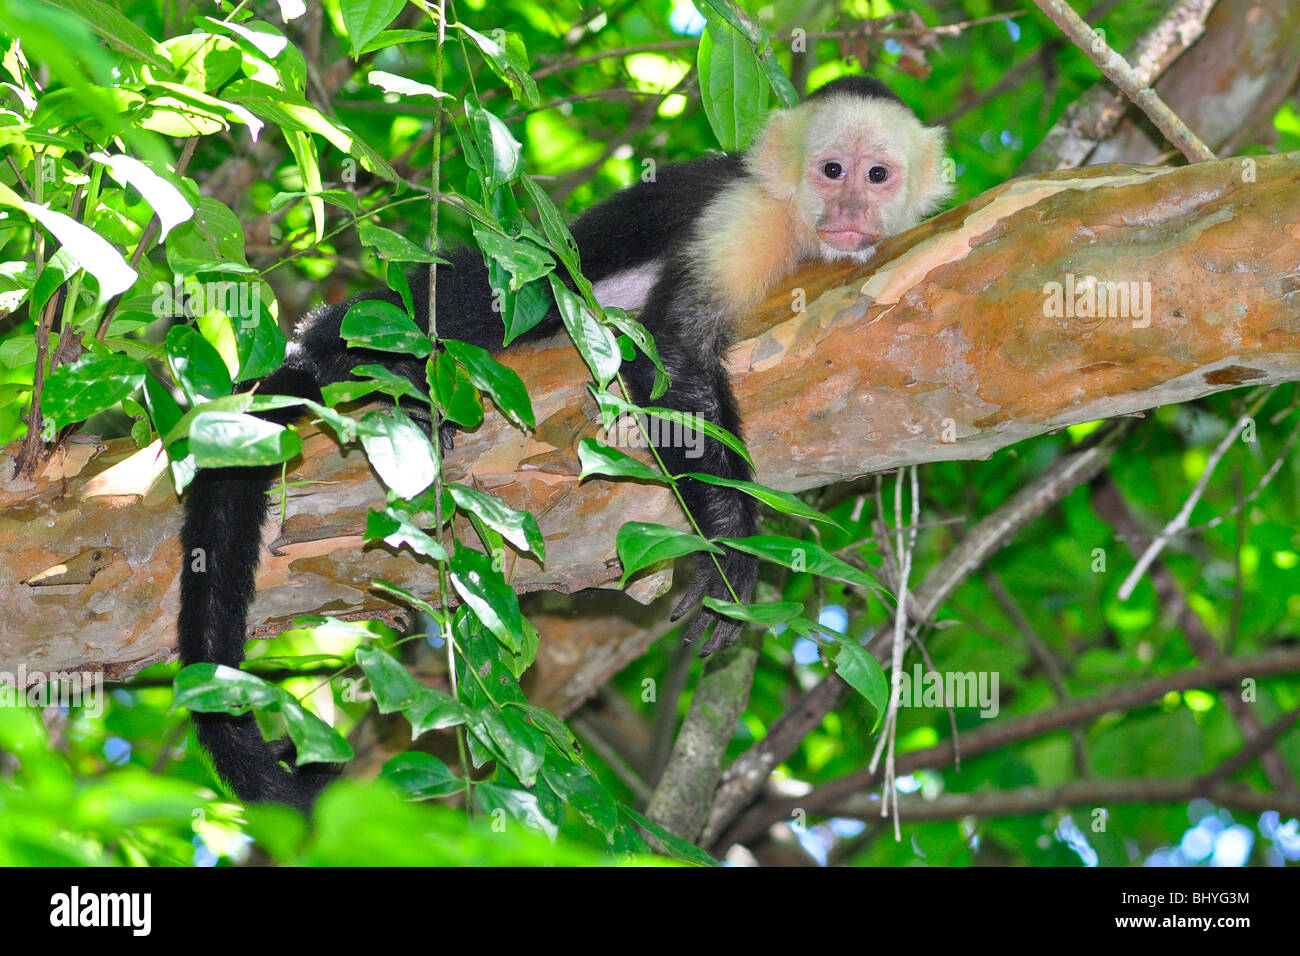 White-headed or white-faced capuchin (Cebus, capucinus) Manuel Antonio, Costa Rica. Stock Photo